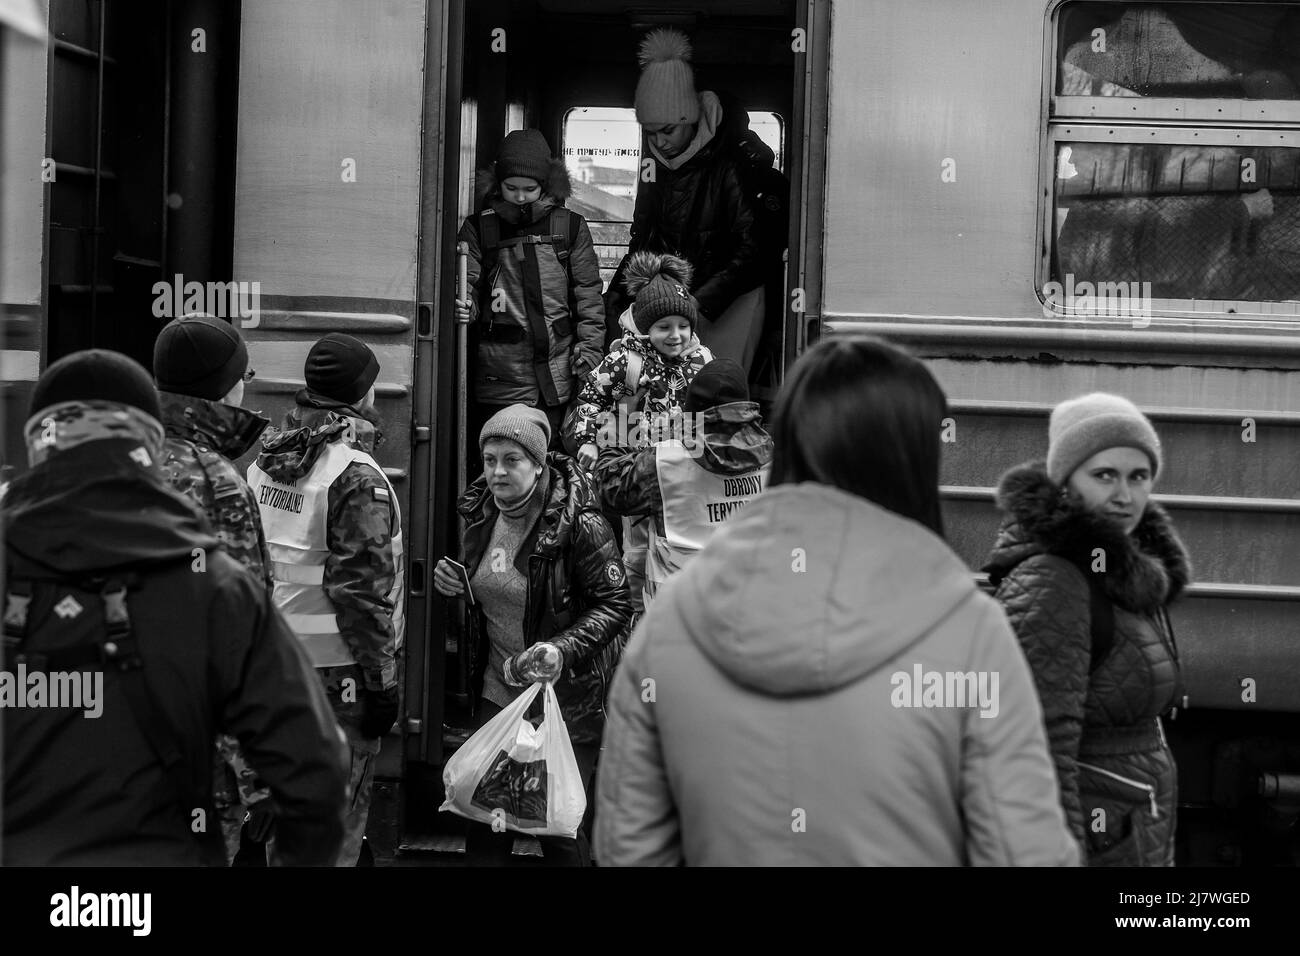 Michael Bunel / le Pictorium - rifugiati al confine polacco-ucraino in seguito all'invasione dell'Ucraina da parte dell'esercito russo - 5/3/2022 - Polonia / Foto Stock